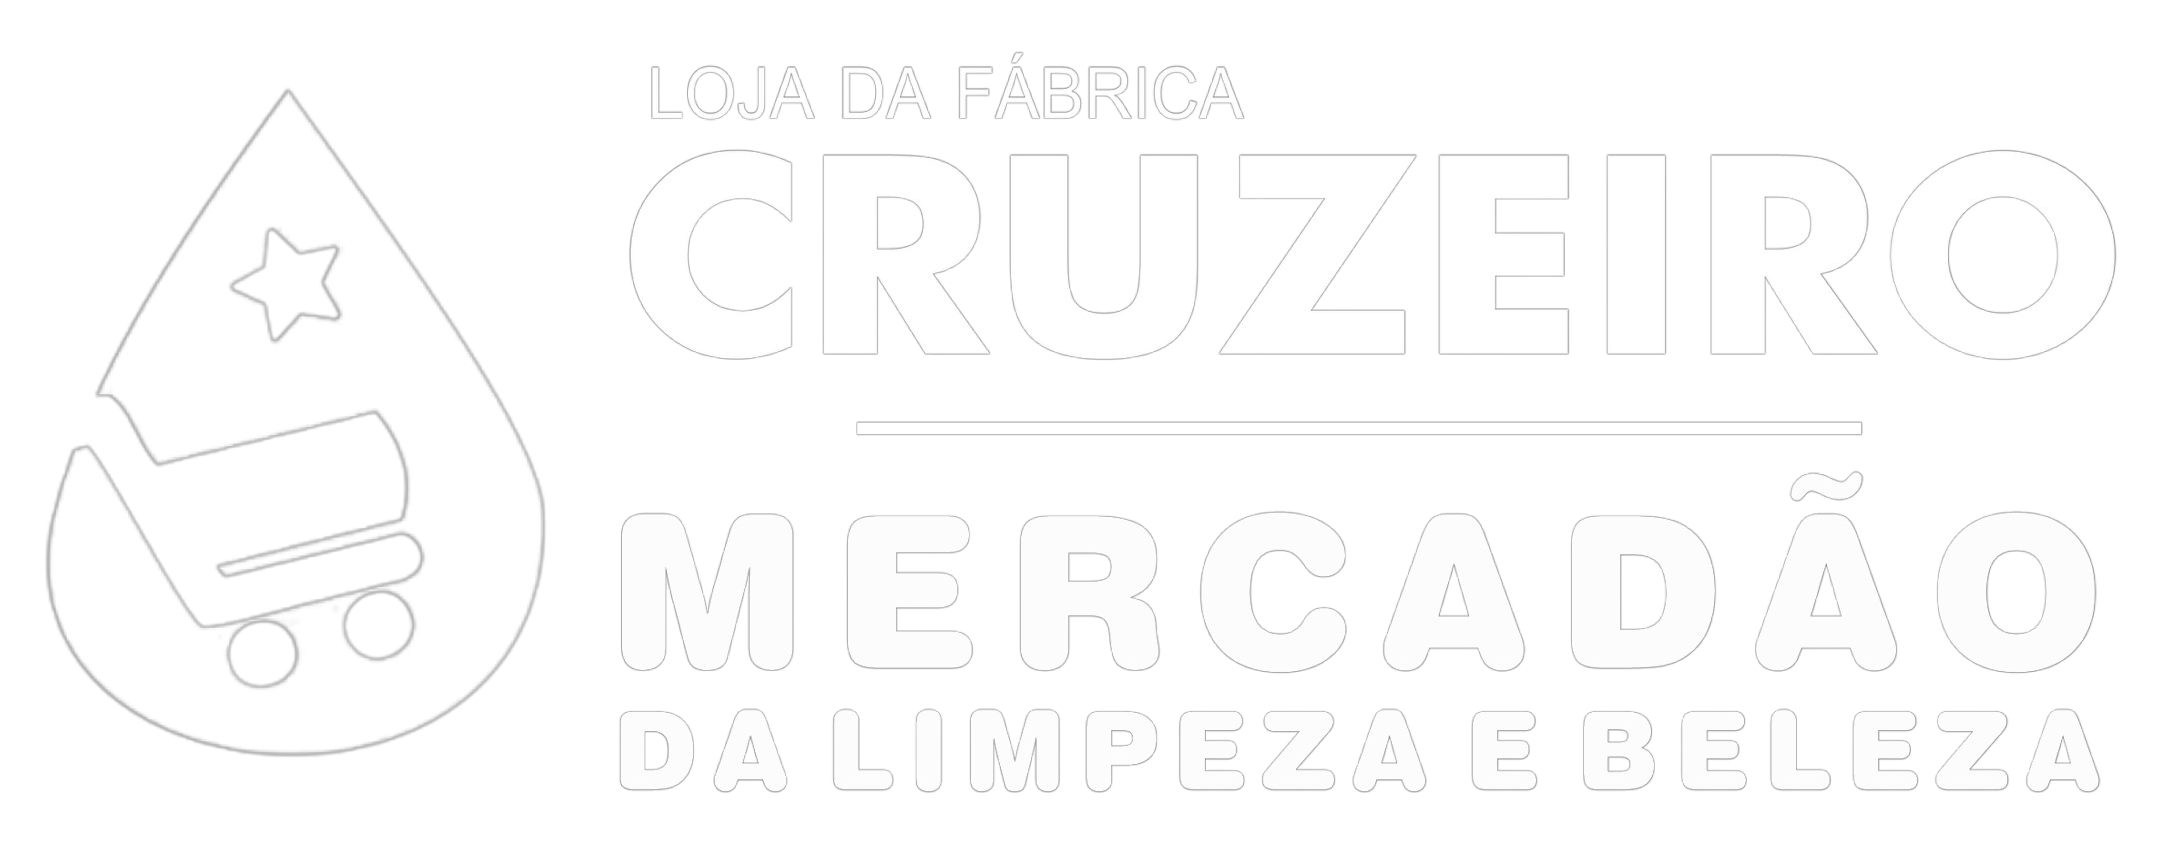 Folder_Madeira_Cruzeiro-removebg